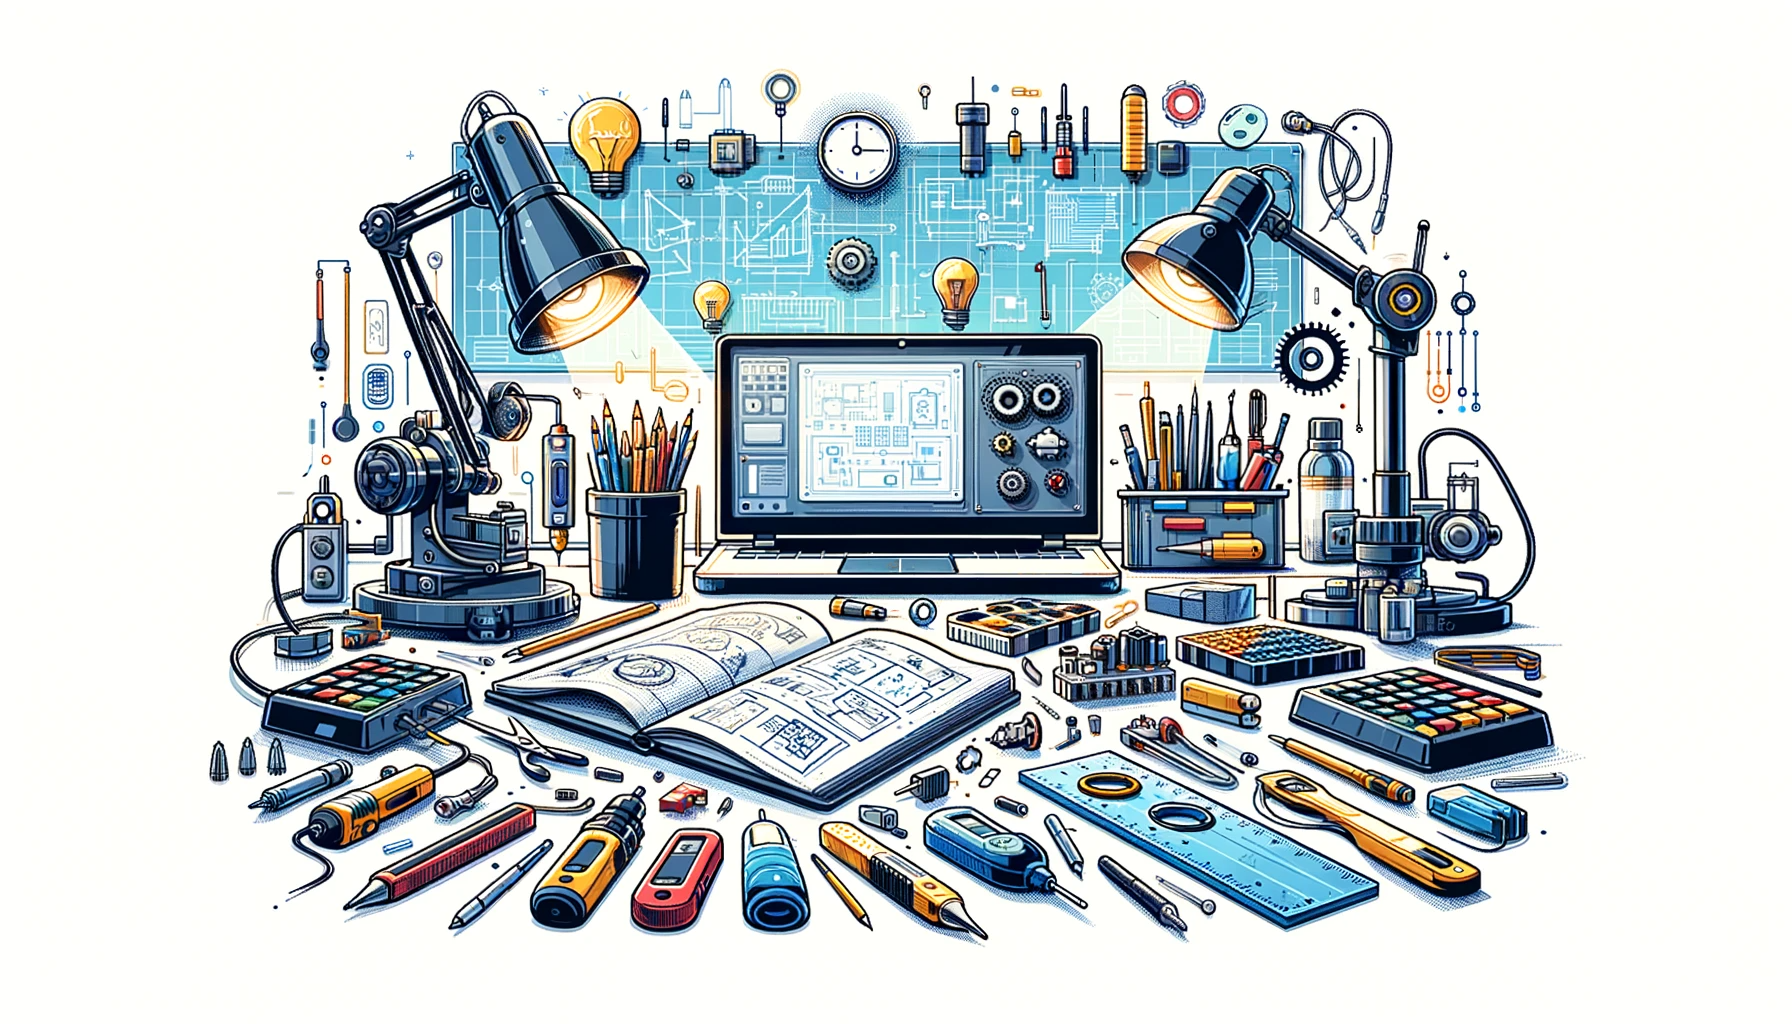 Illustration vectorielle colorée avec un fond blanc, montrant un atelier équipé pour un projet de conception mécanique, électronique et informatique